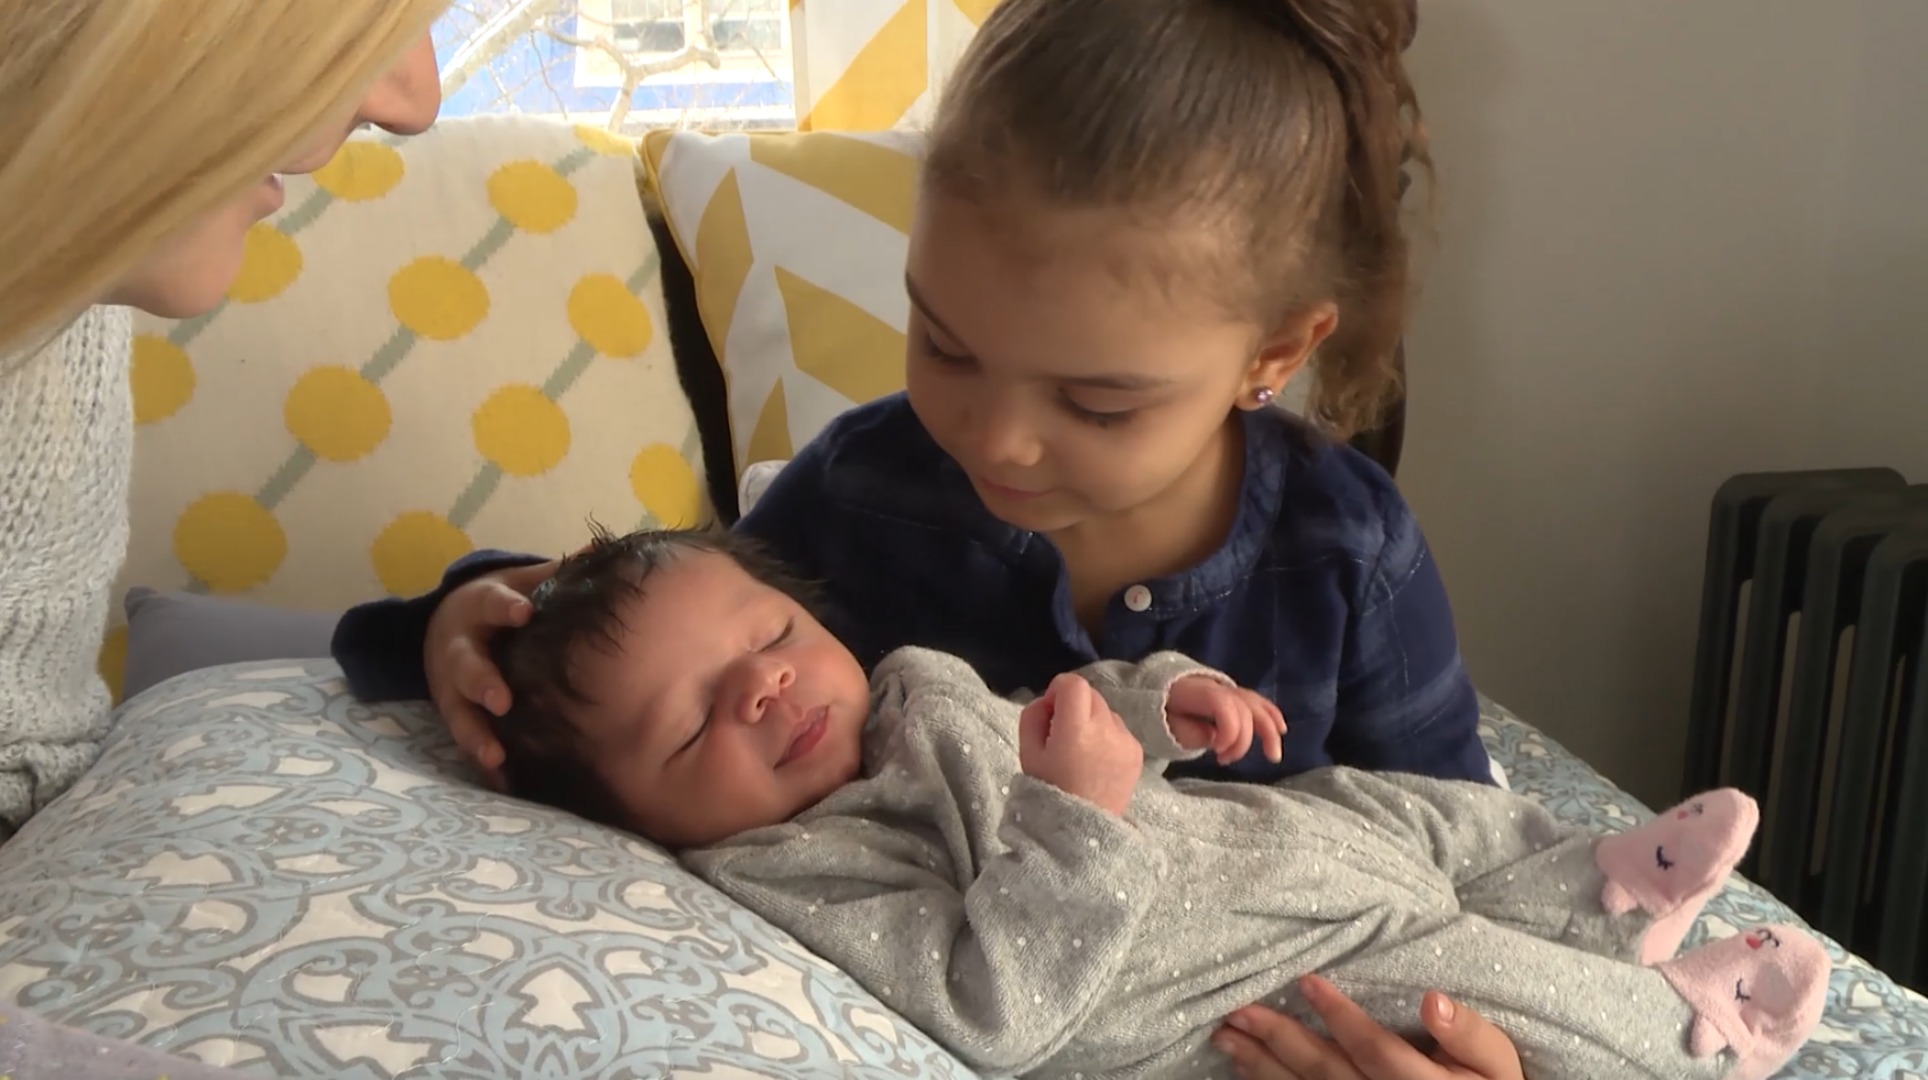 Aviahna Loves Her Baby Sister!